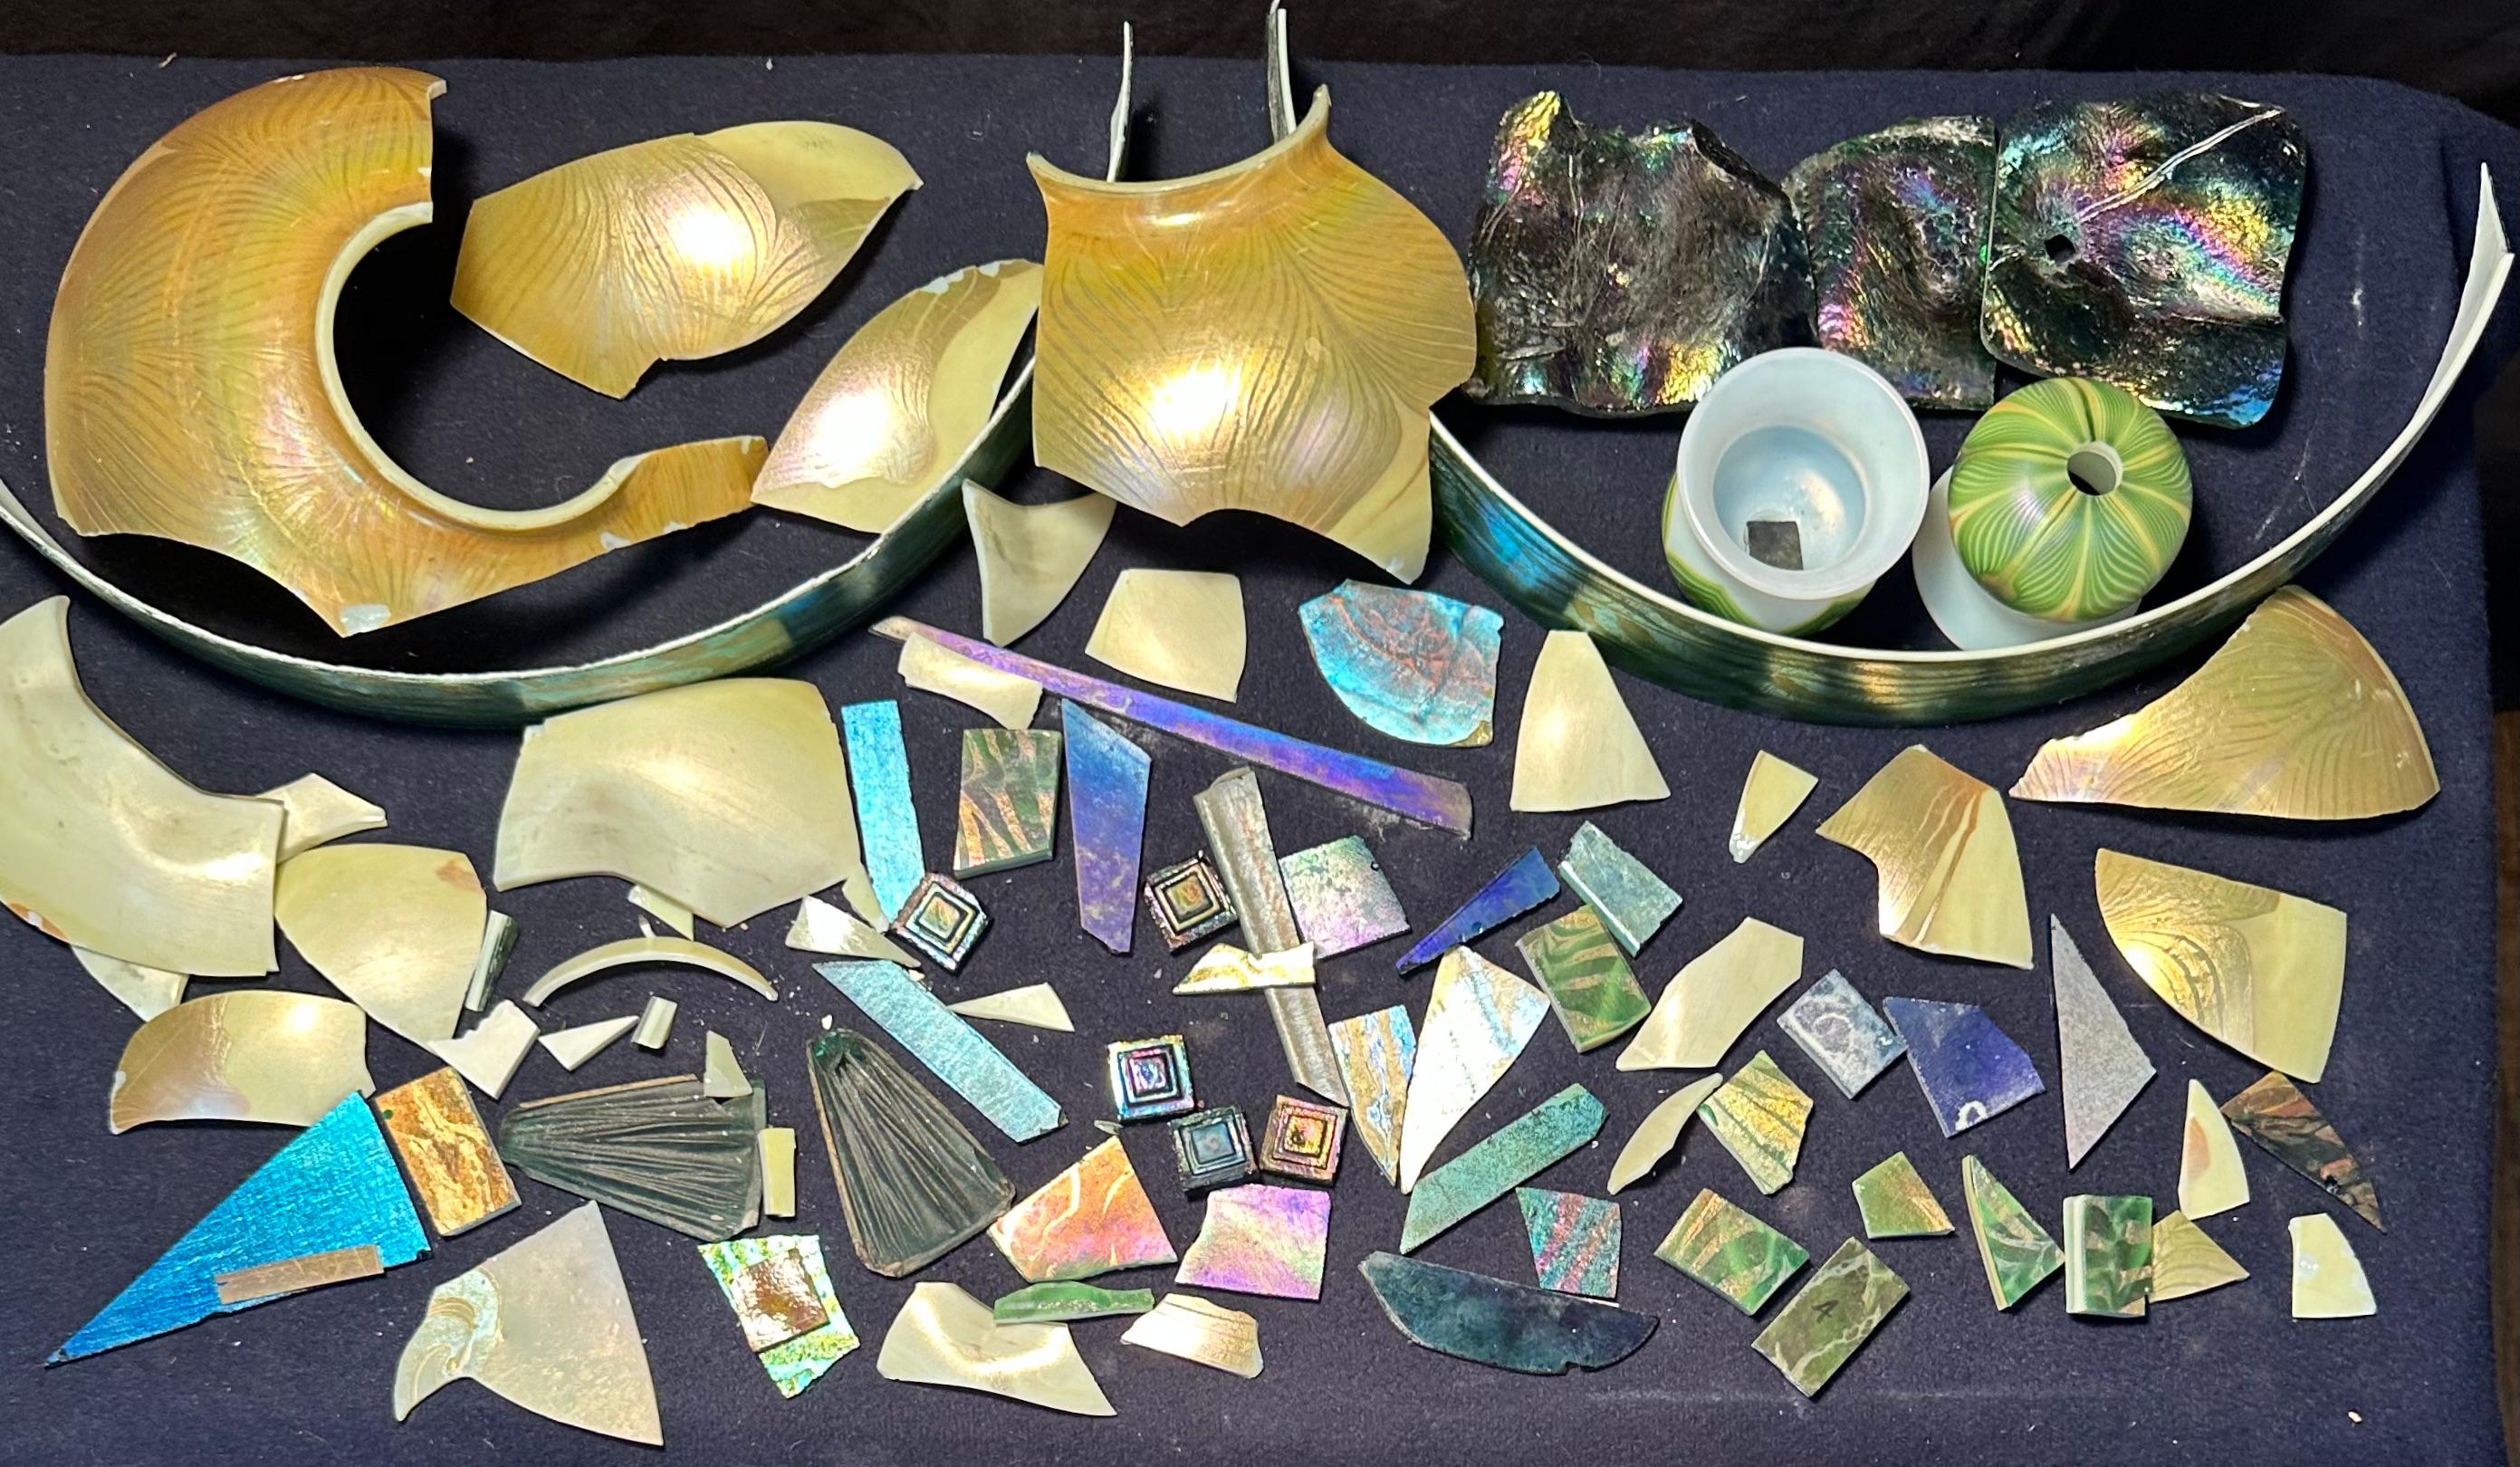 Diese Sammlung von Favril-Kunstglasfragmenten aus dem frühen 20. Jahrhundert stammt aus den Tiffany Studios in New York. Es besteht aus zahlreichen Stücken von Favrile Art Glas Fragmente in verschiedenen Formen, Größen und Farben. Dieses Sortiment